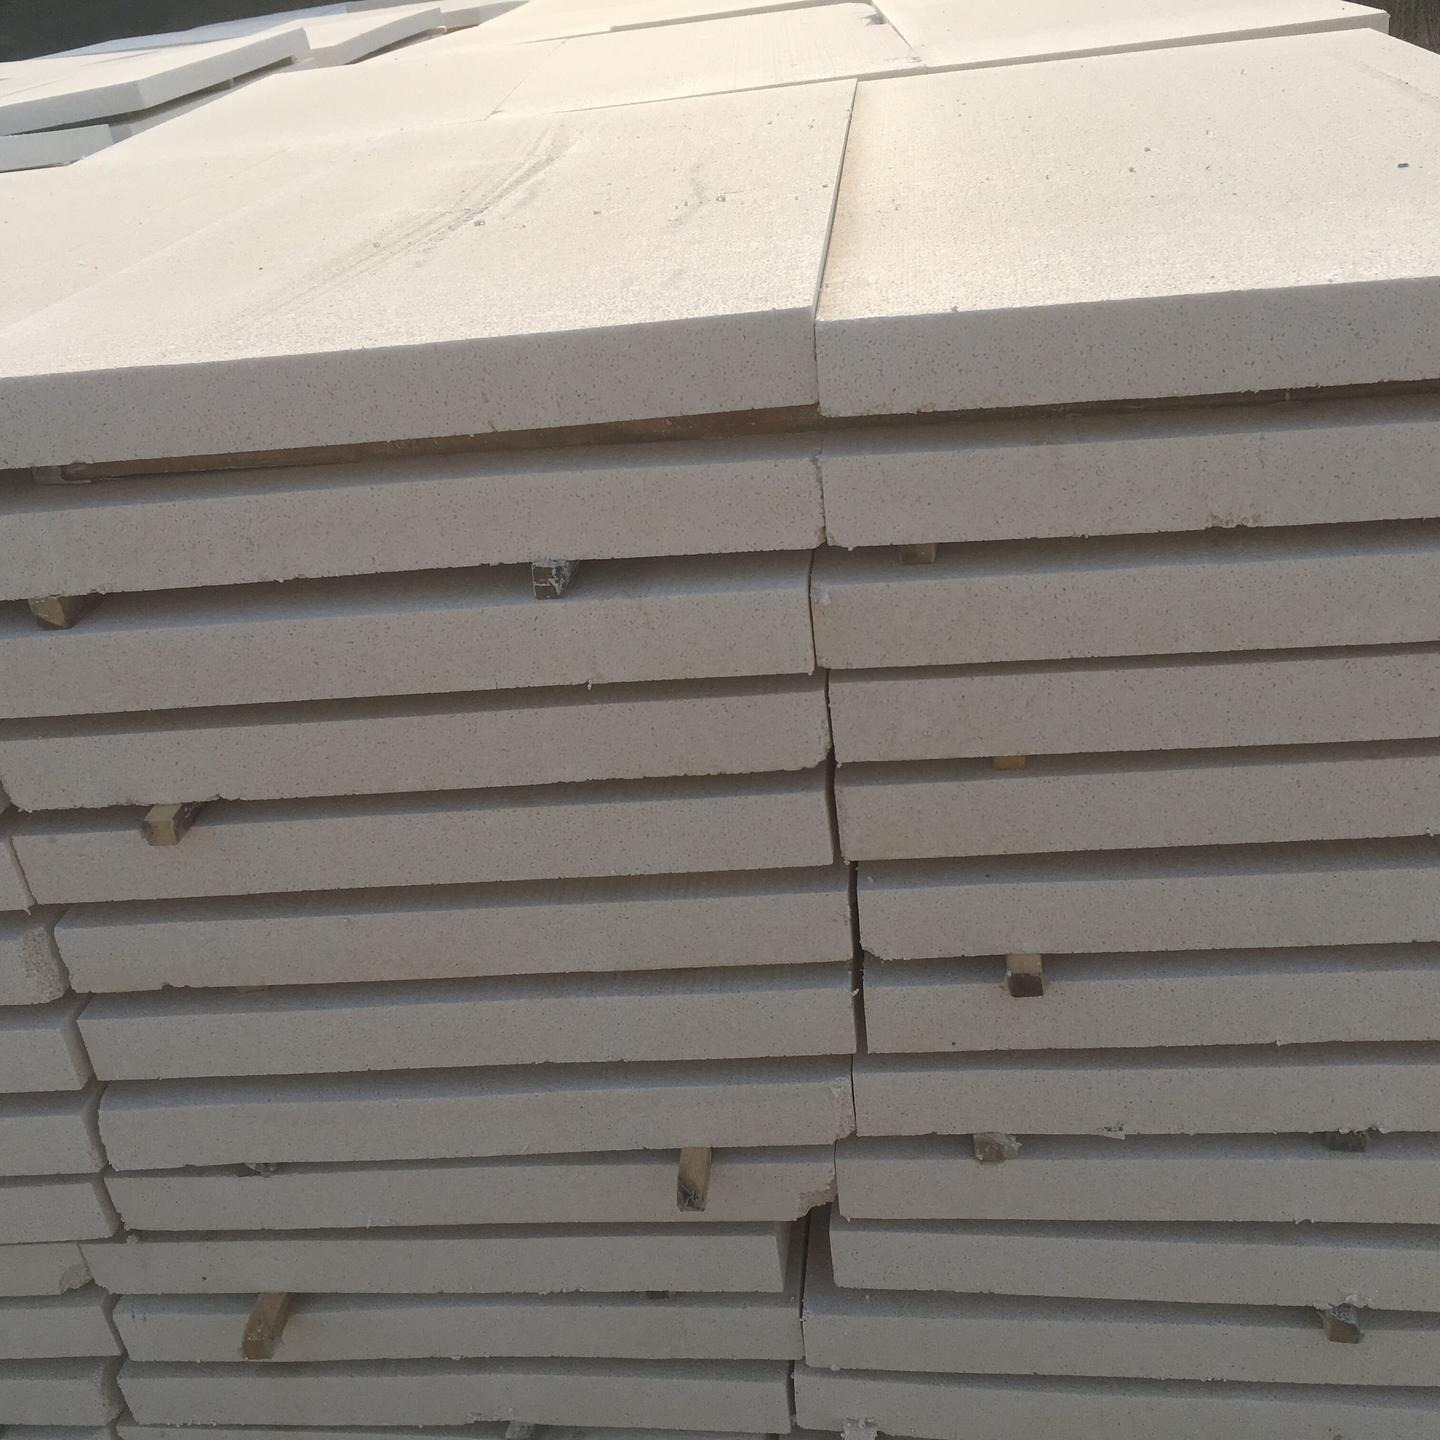 供应新型A级不燃聚合物聚苯板外墙硅质板  改性聚苯板 厂家直销优质硅质板 聚苯板 质量保证 价格优惠图片